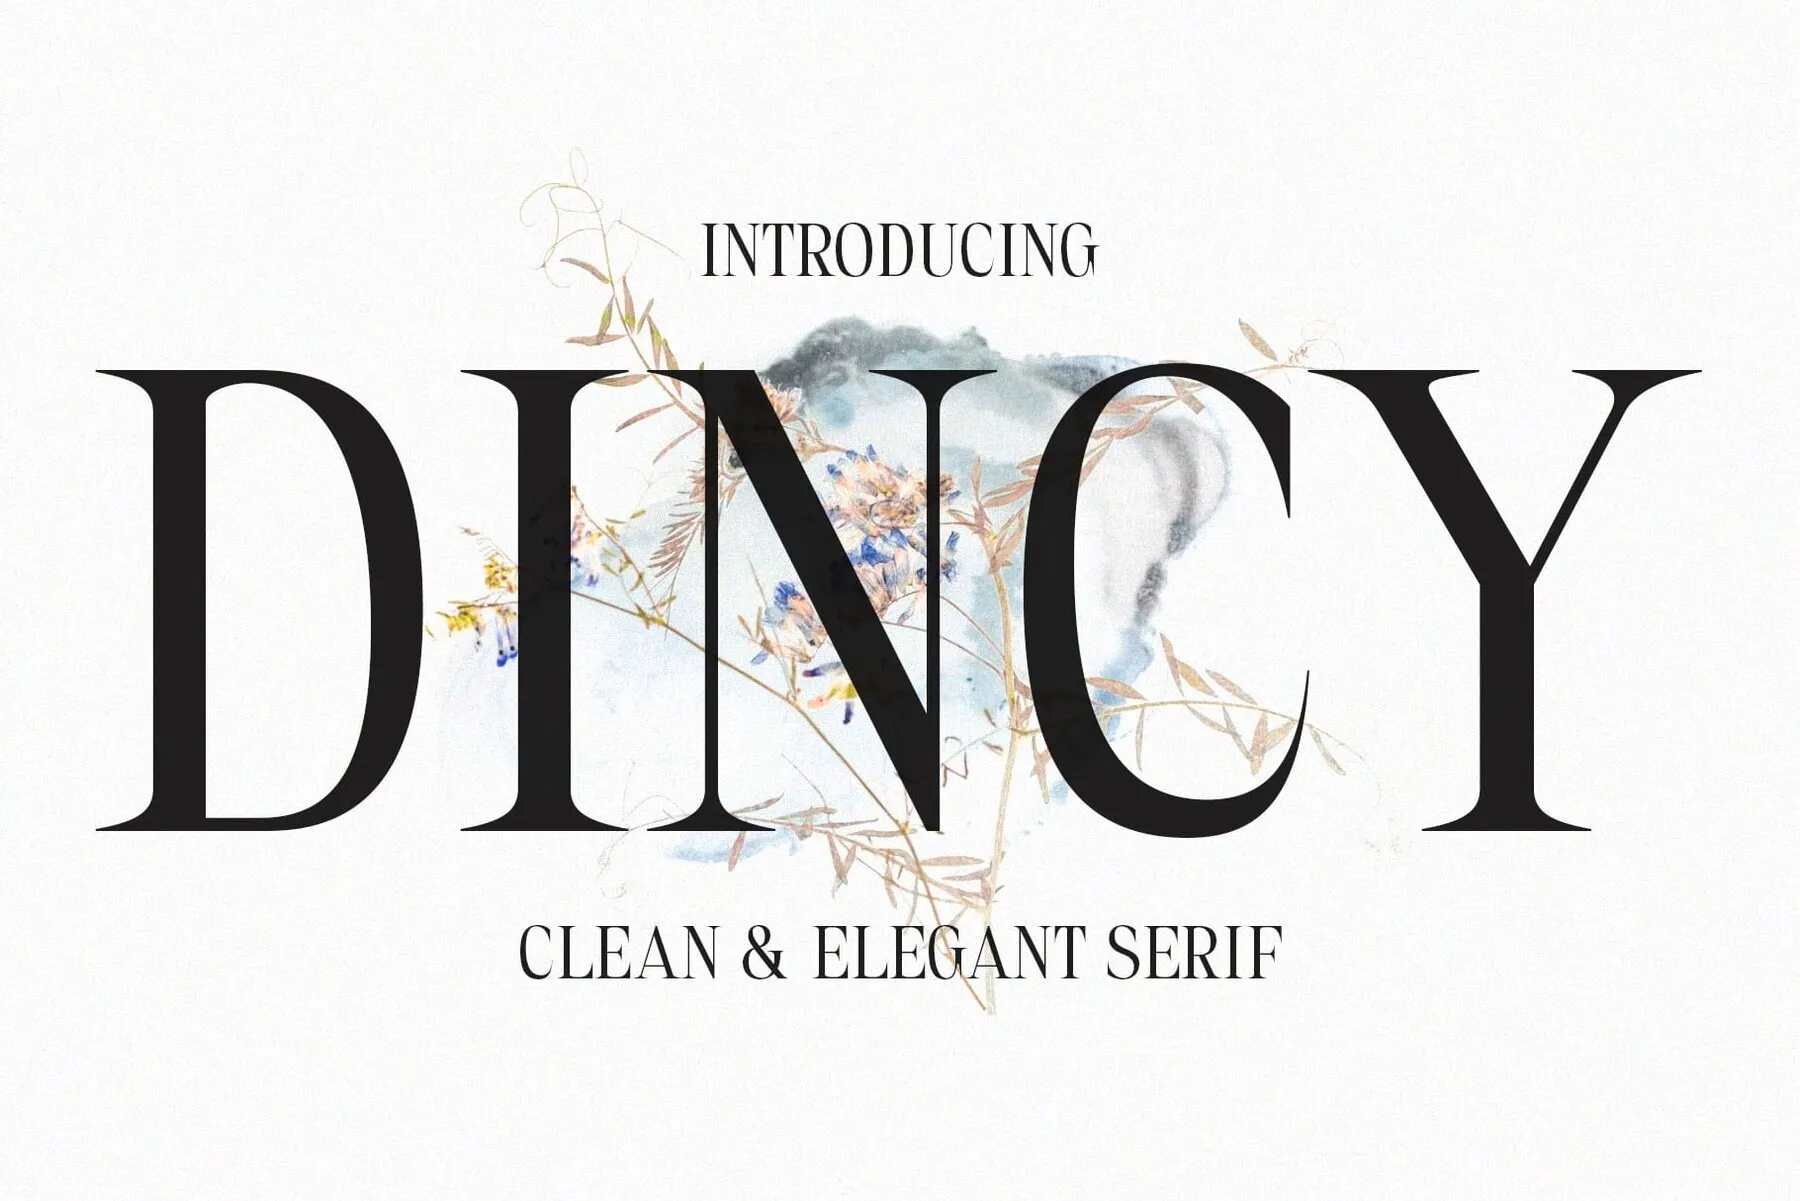 Dincy